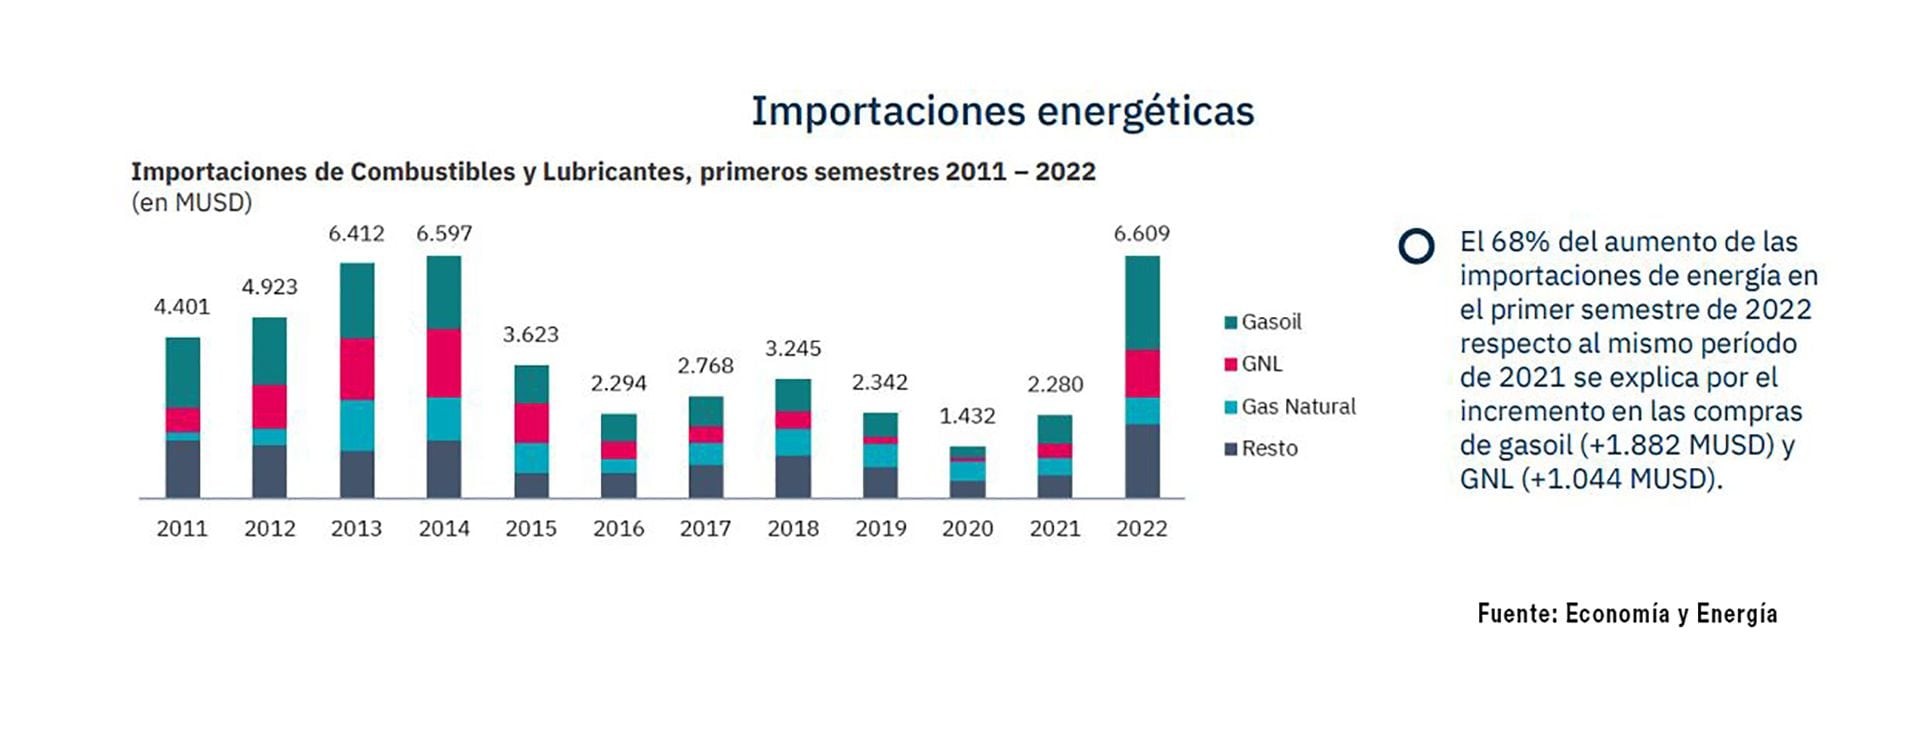 Las importaciones argentinas de energía del primer semestre del año